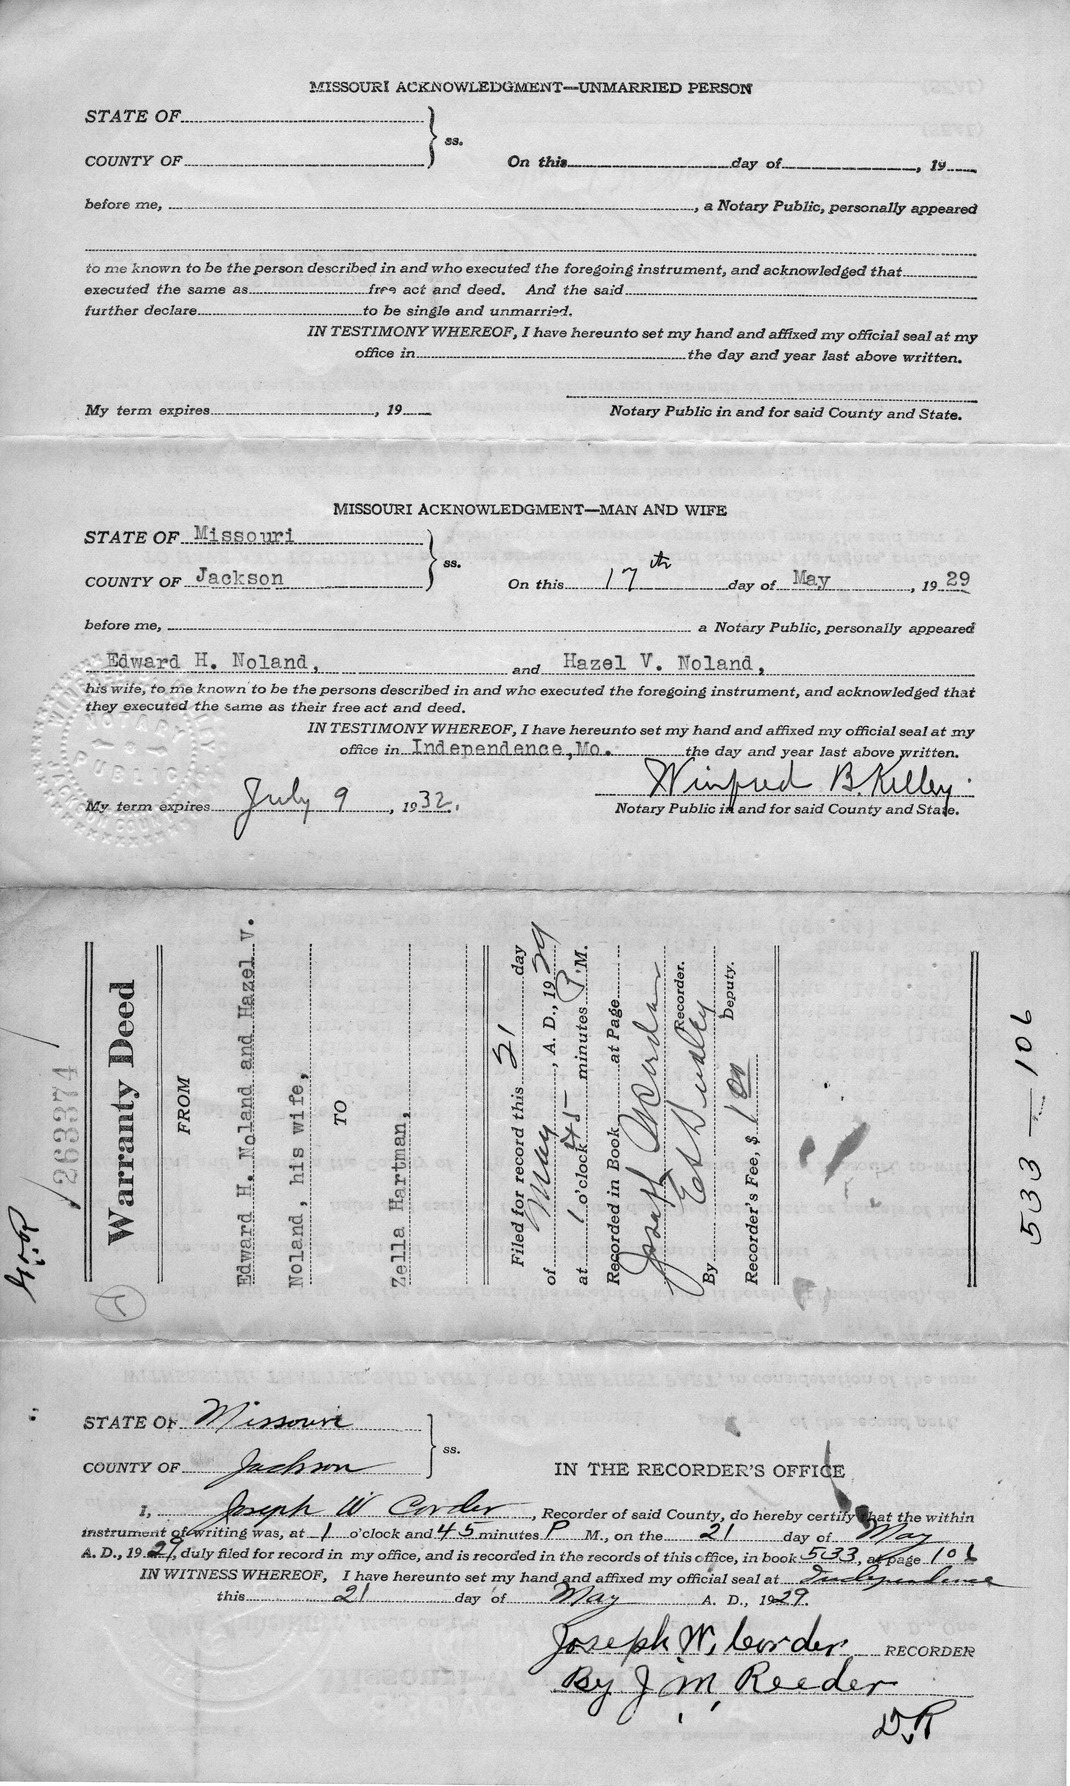 Warranty Deed from Edward H. Noland and Hazel V. Noland to Zella Hartman